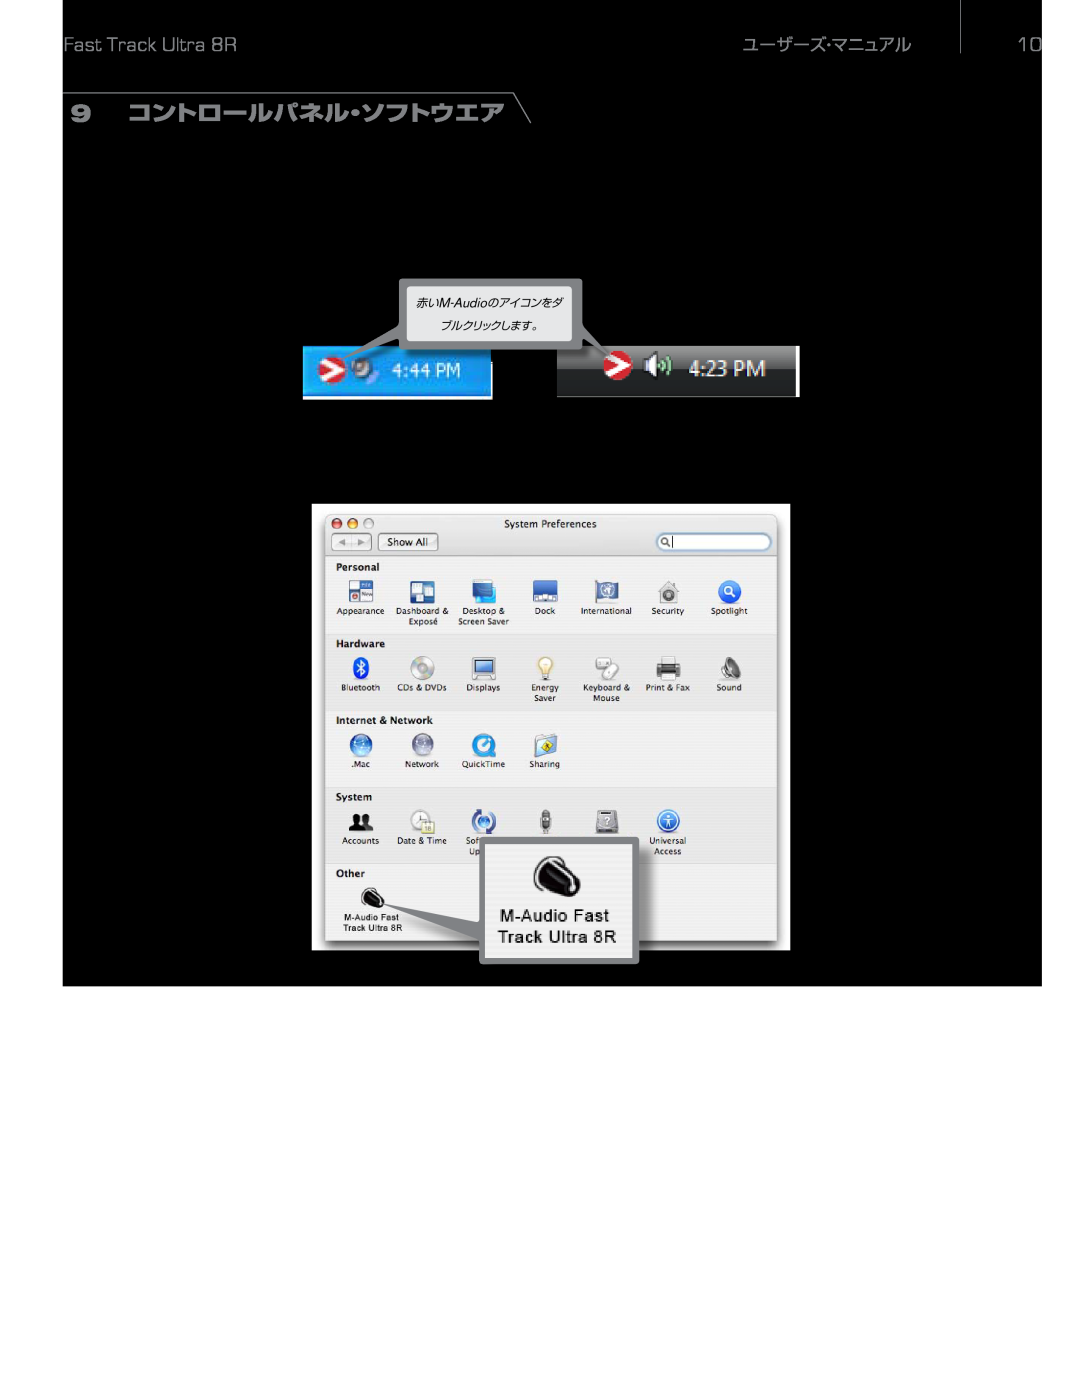 M-Audio 9 コントロールパネル・ソフトウエア, Windows XP, Mac OS Xではシステム環境設定のウインドウから「M-Audio Fast Track Ultra 8R」をクリックします。, ユーザーズ・マニュアル 